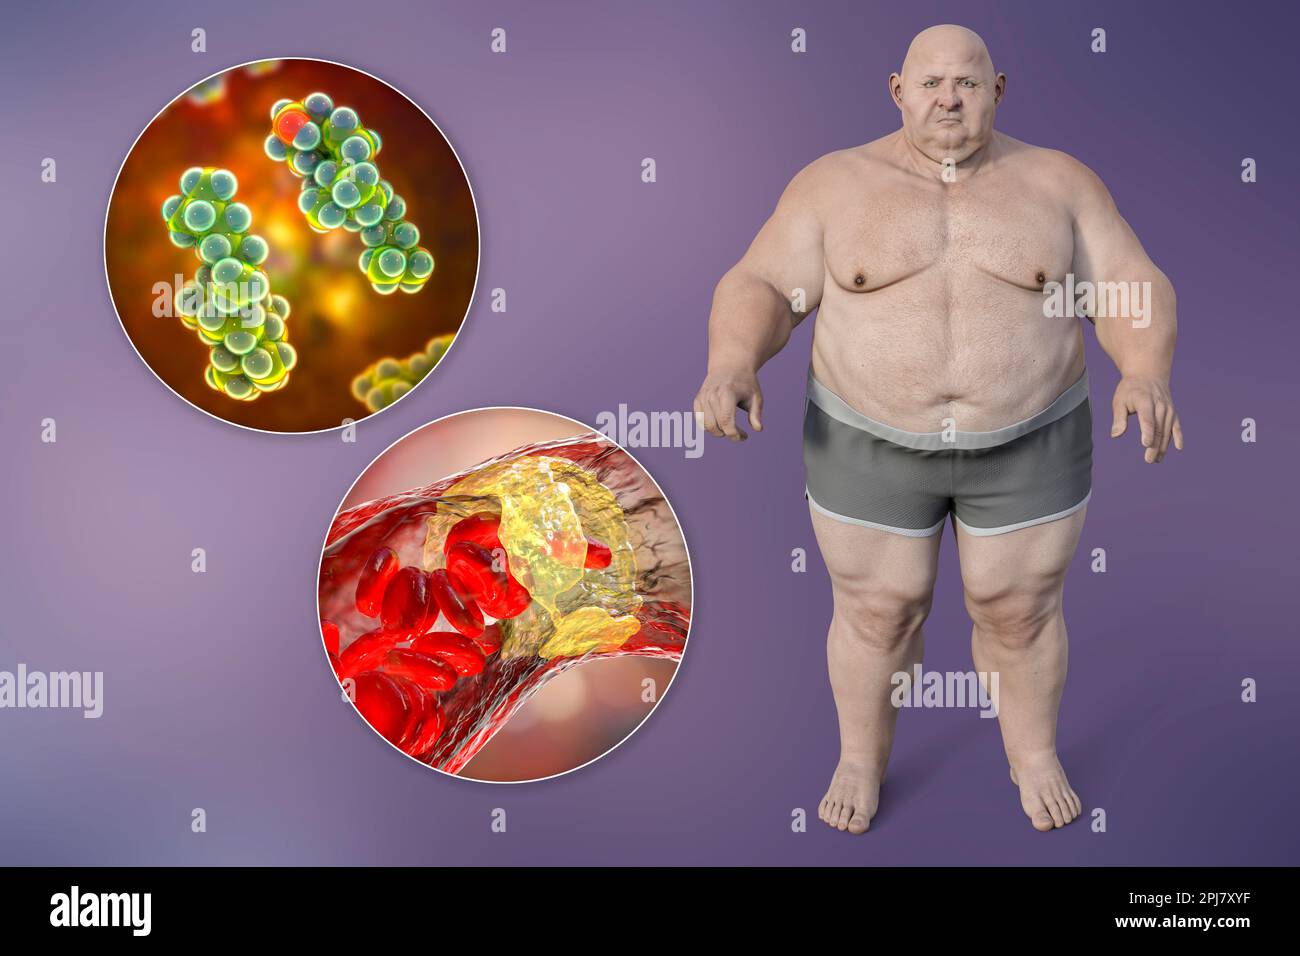 Obésité et athérosclérose, illustration conceptuelle Banque D'Images